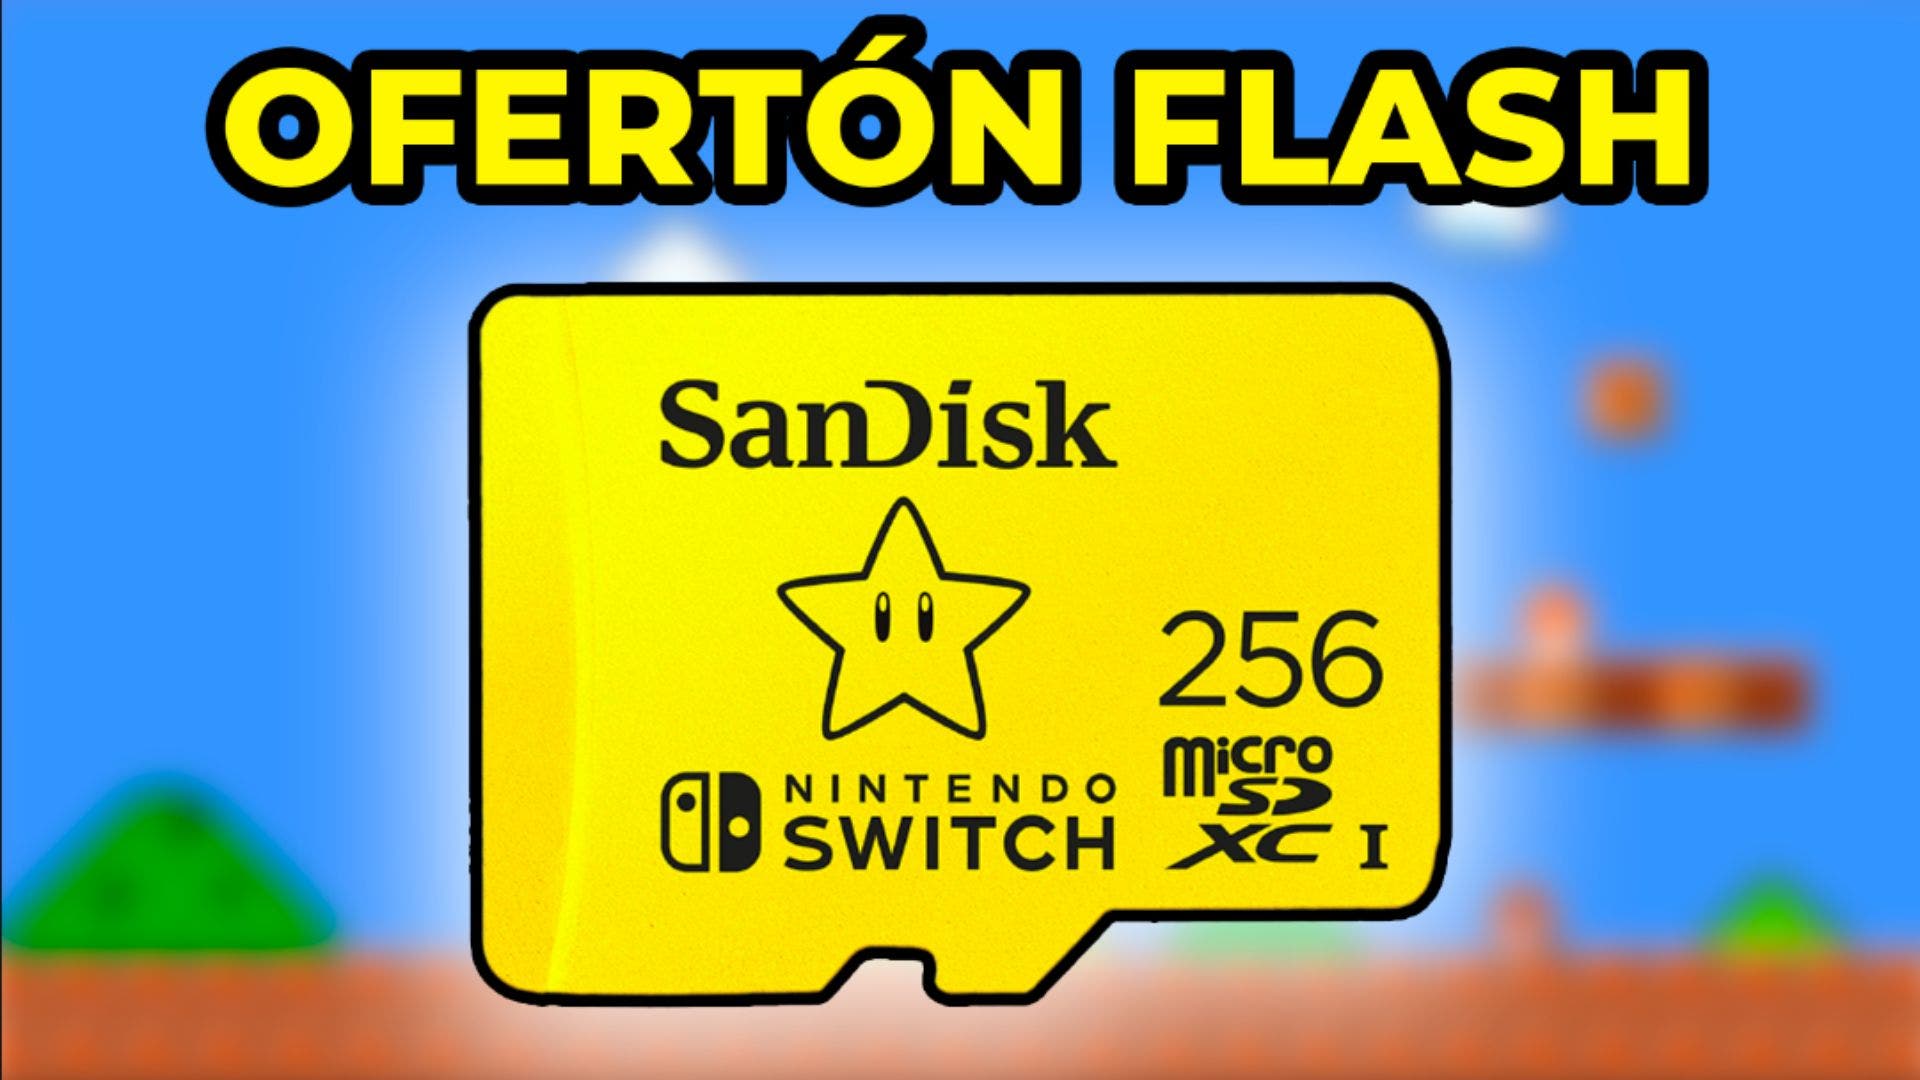 Consigue esta tarjeta SD oficial de 256 GB para Switch a mitad de precio con esta oferta flash